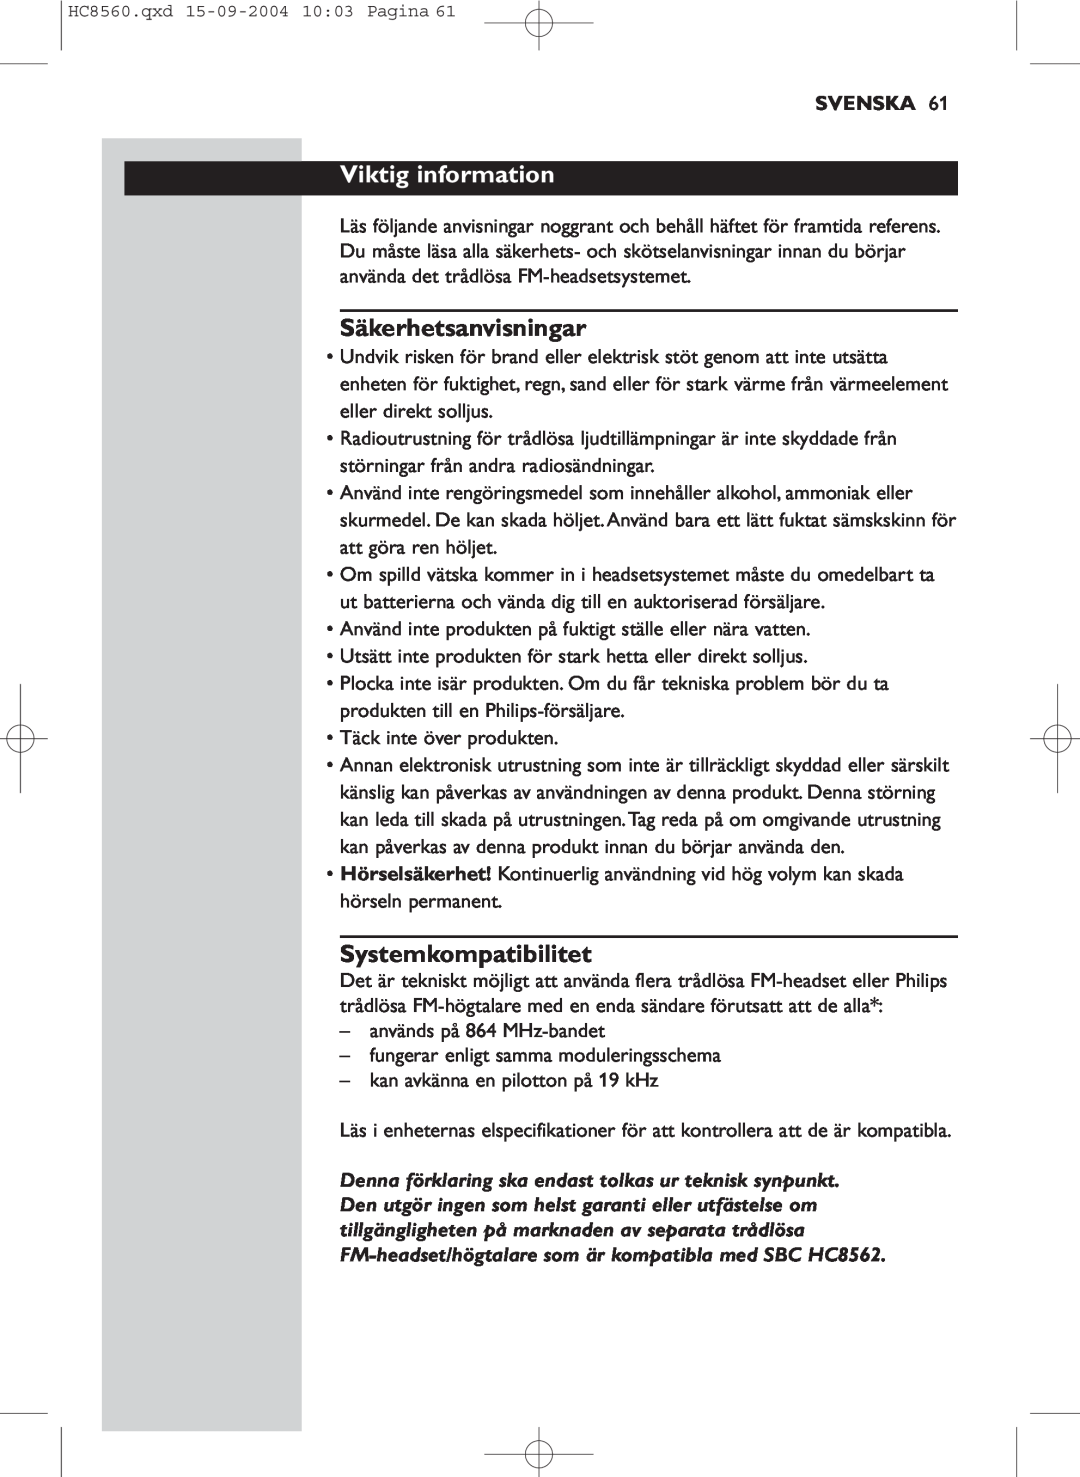 Philips HC 8560 manual Viktig information, Säkerhetsanvisningar, Systemkompatibilitet, Svenska 